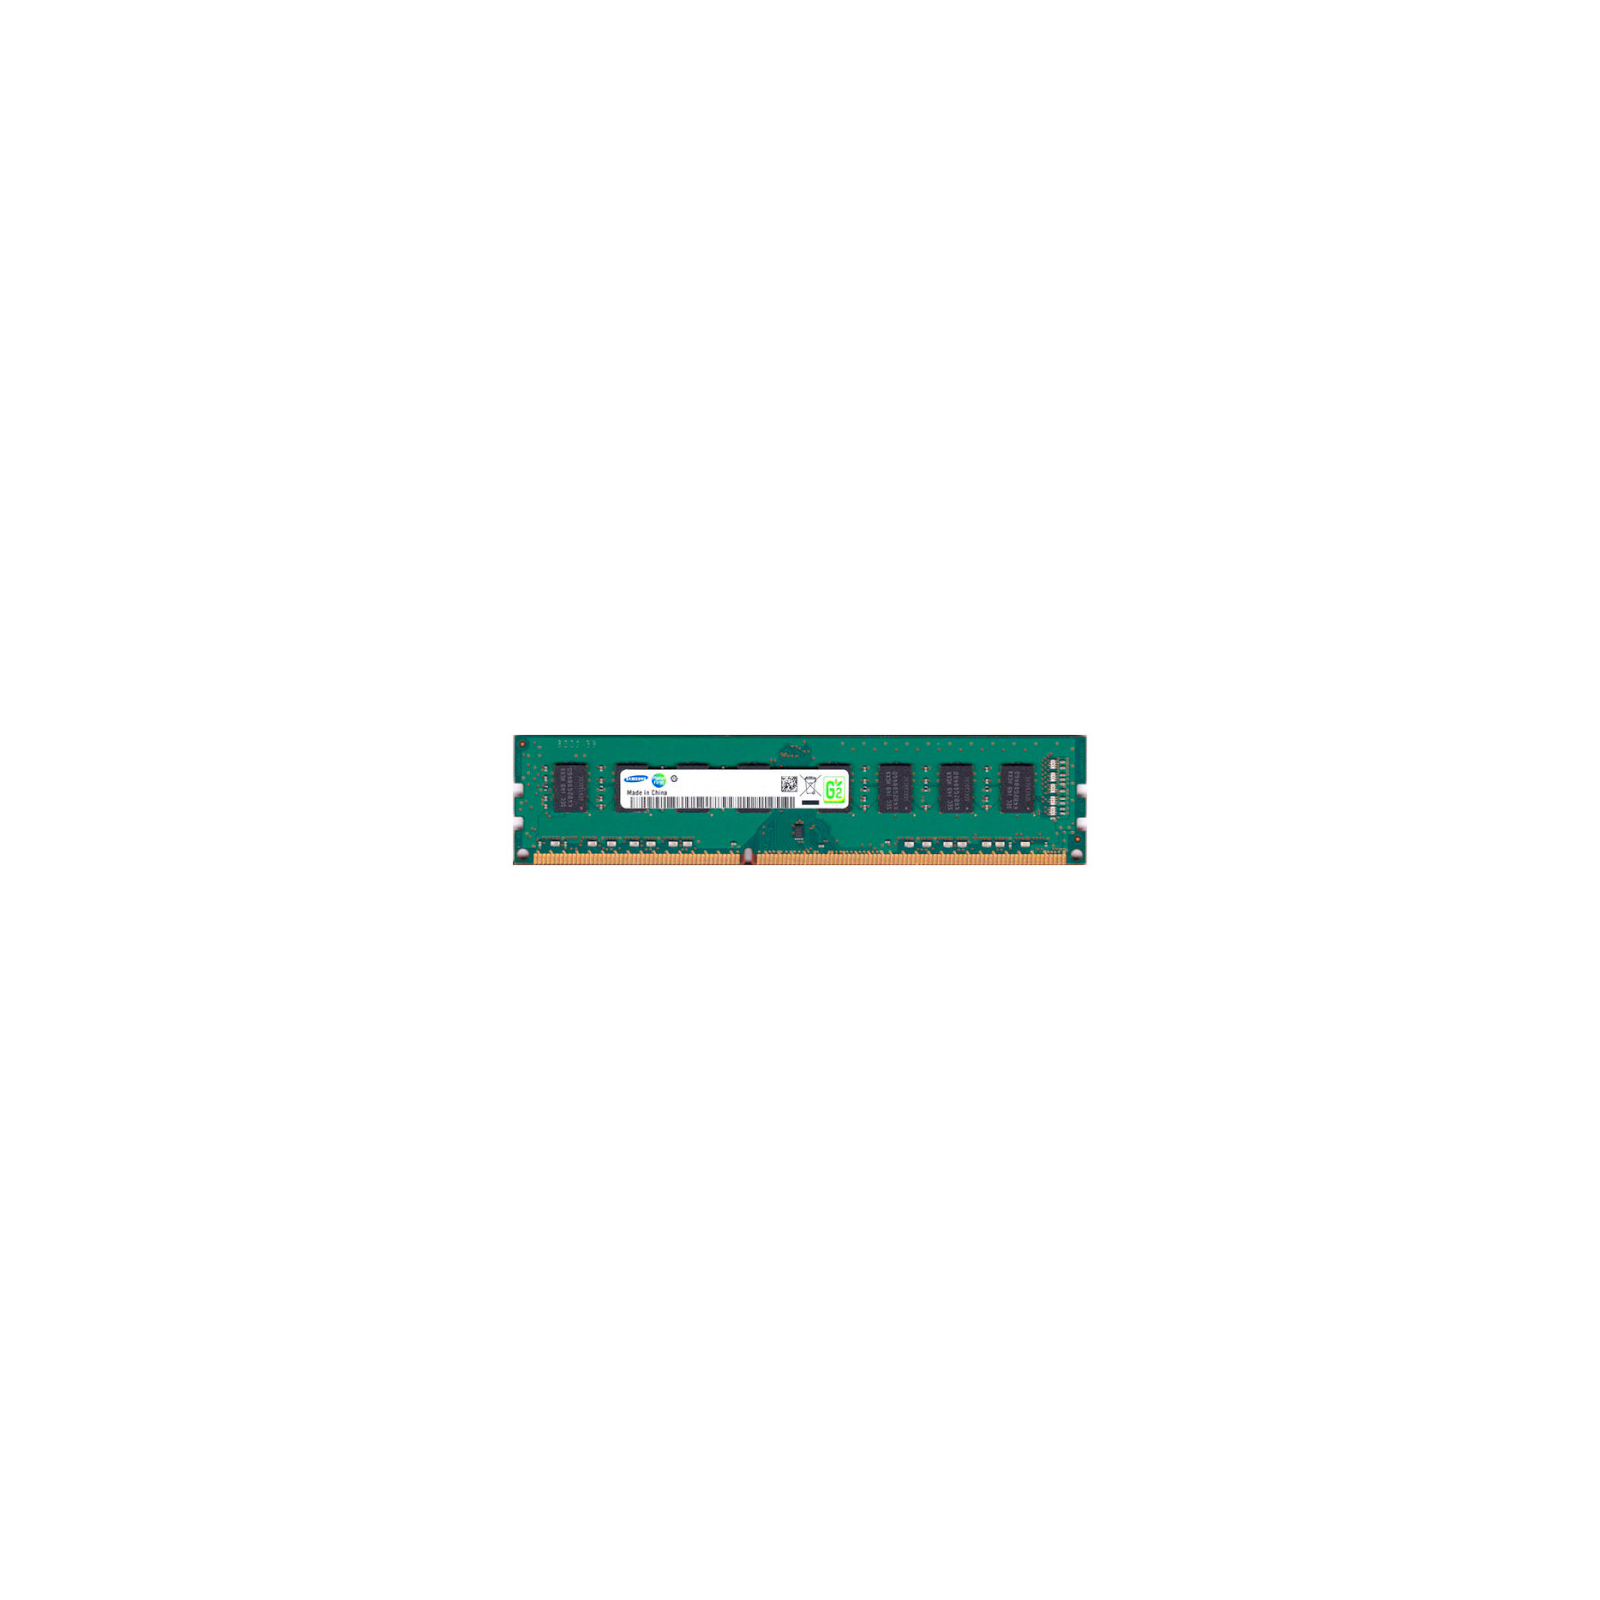 Модуль памяти для компьютера DDR3 4GB 1600 MHz Samsung (M378B5173QHO-CKO)